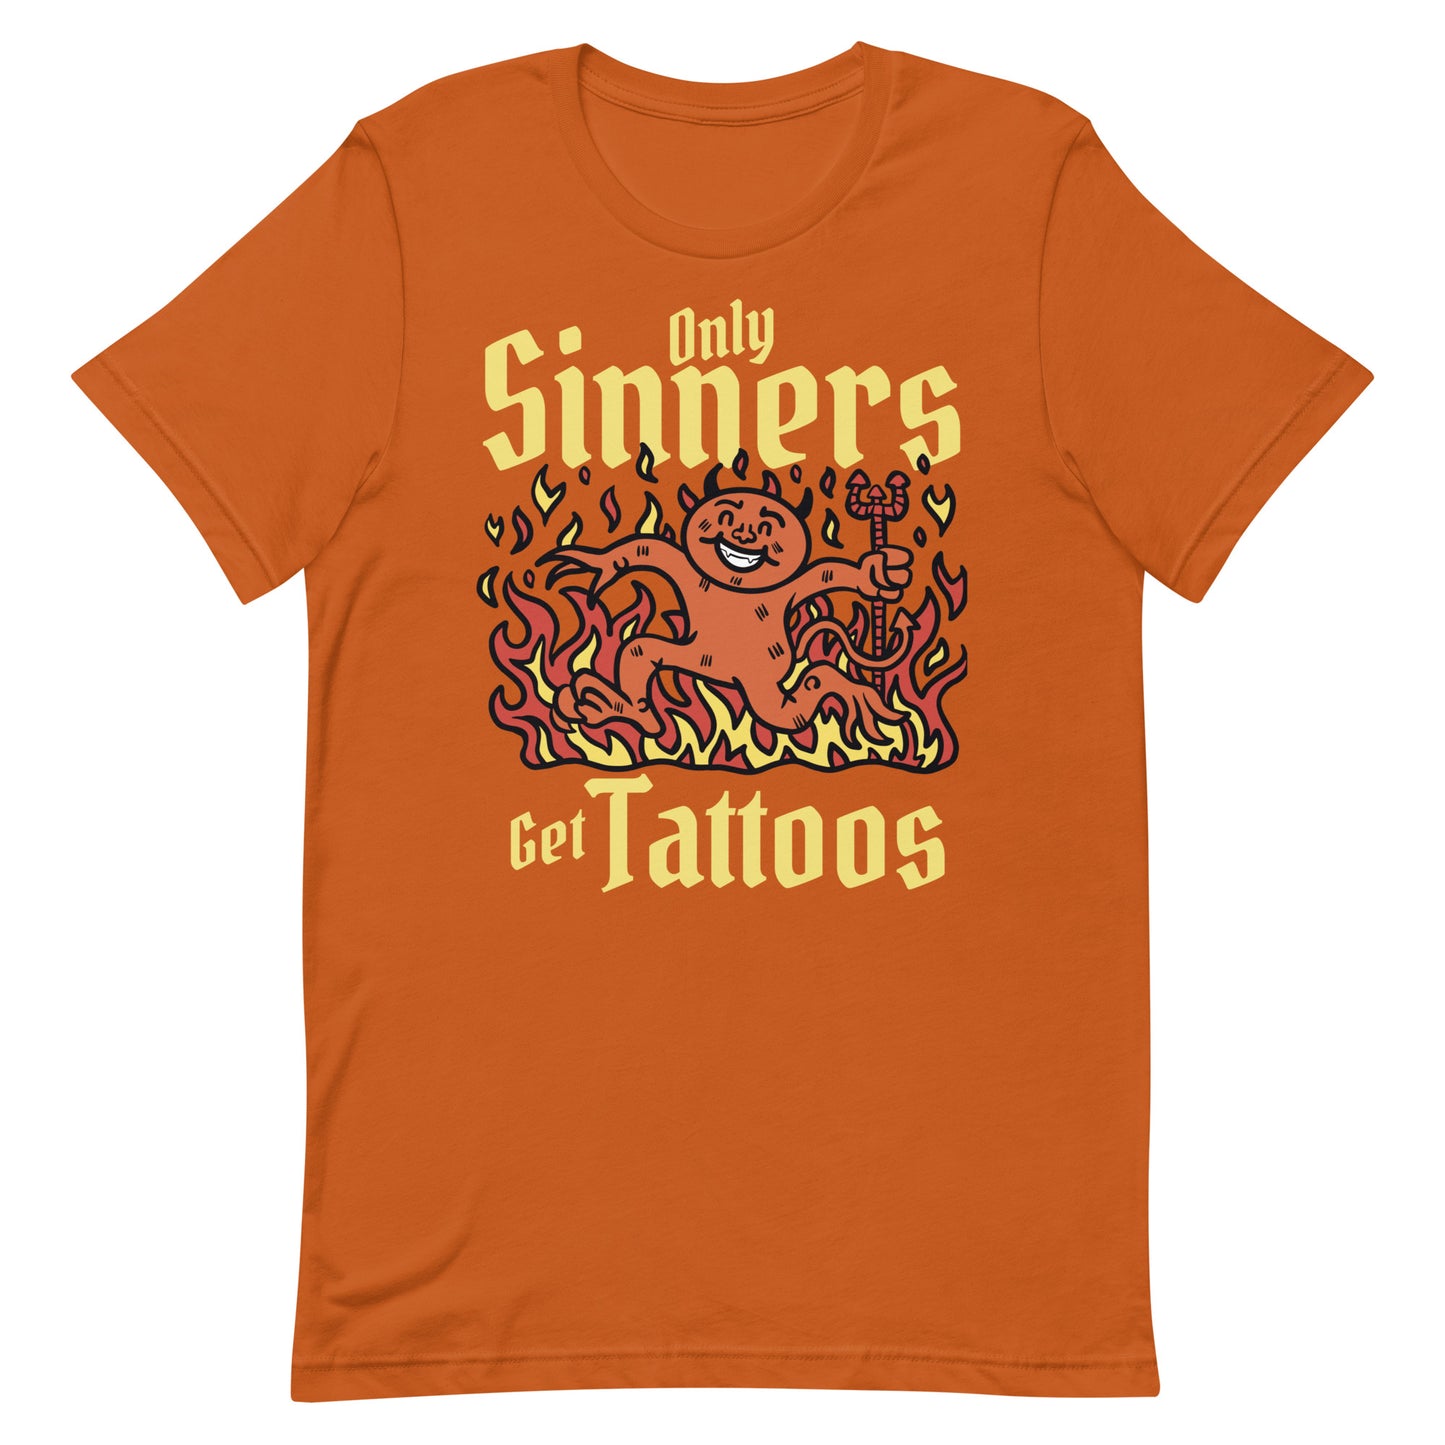 Only Sinners Get Tattoos Unisex t-shirt